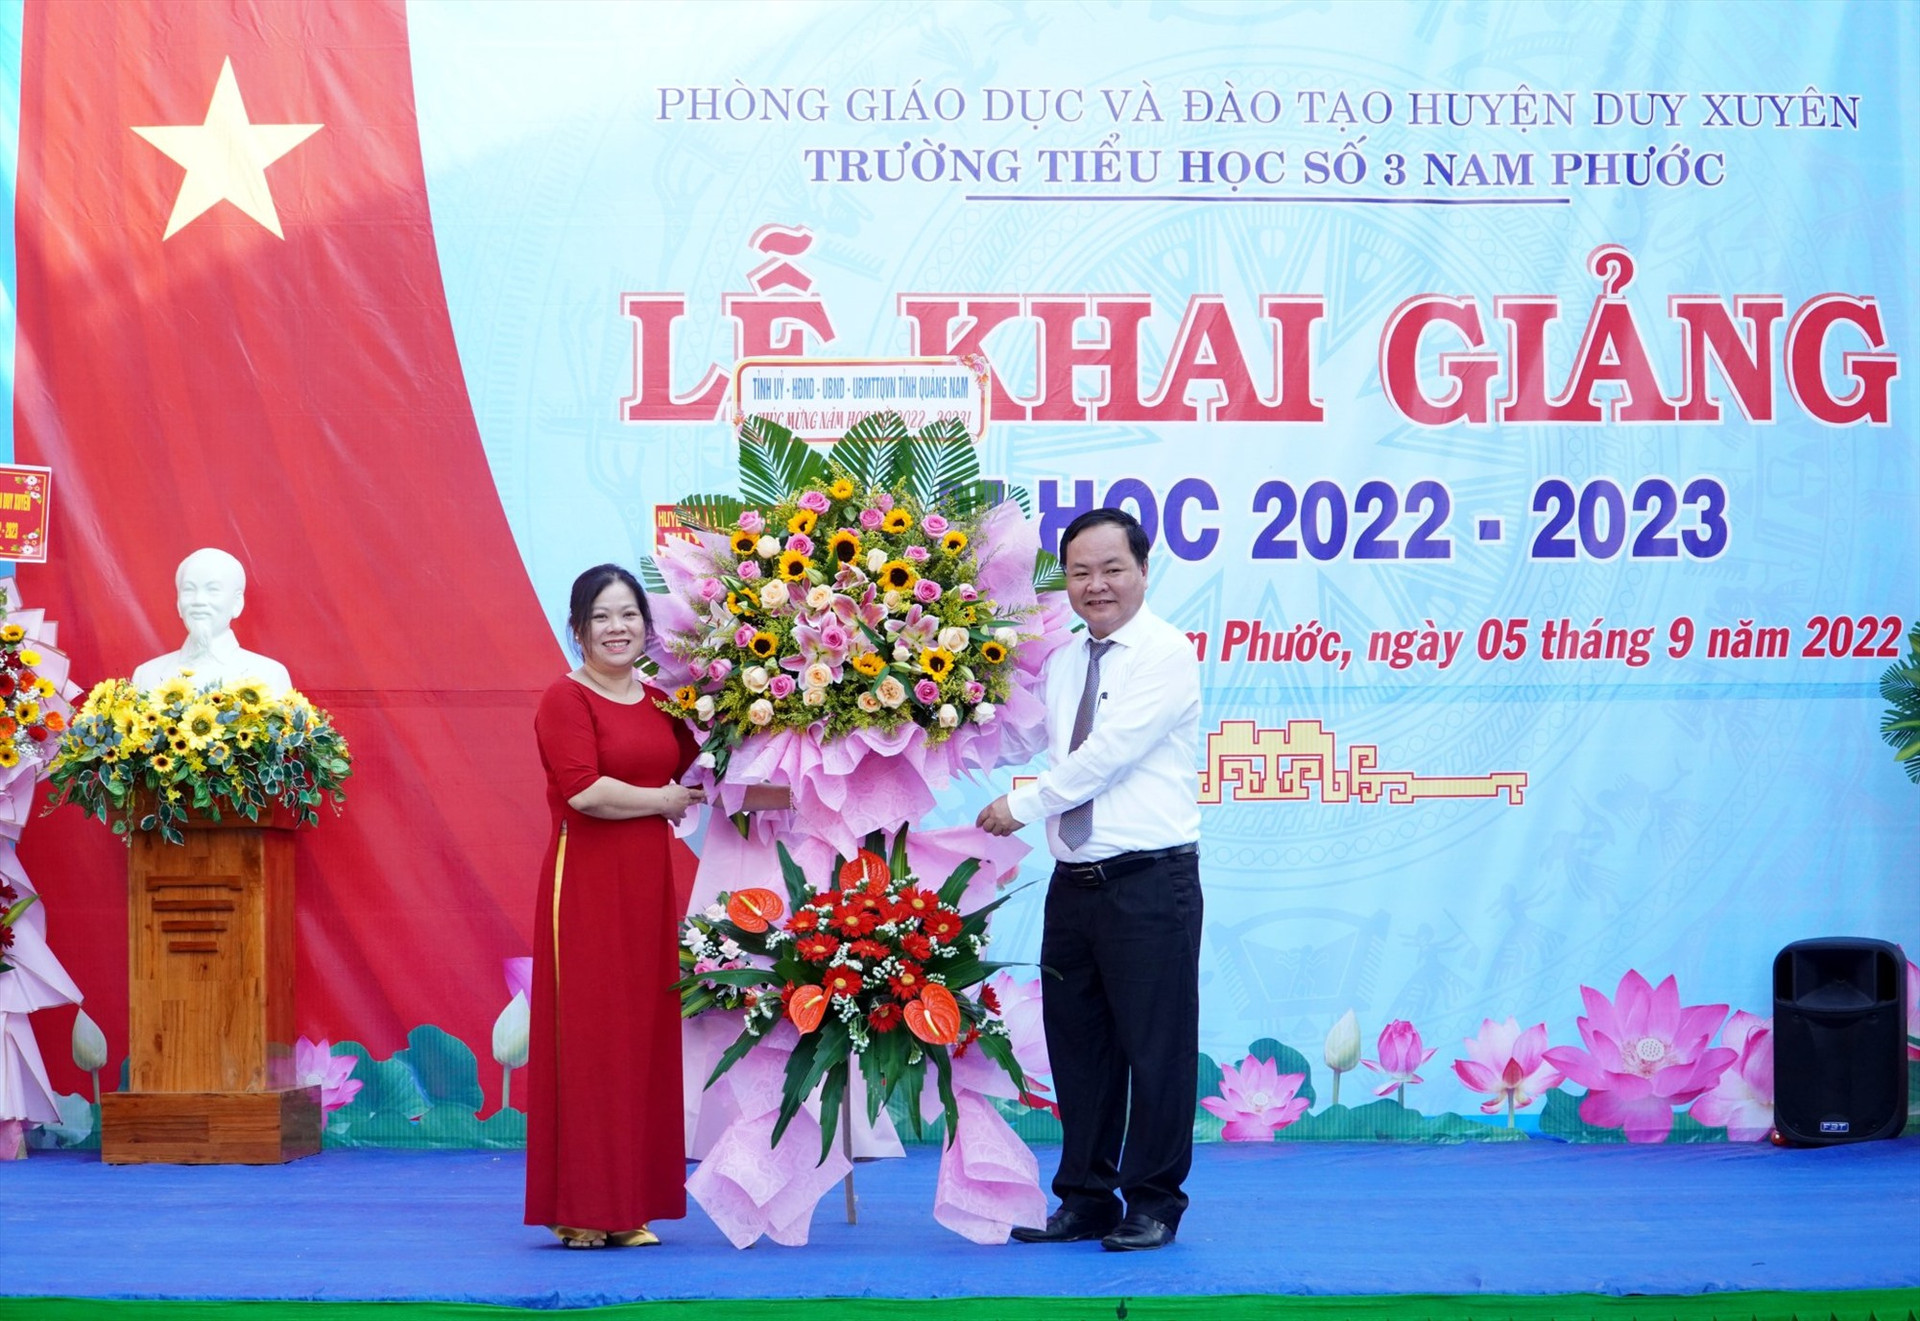 Phó Chủ tịch UBND tỉnh Nguyễn Hồng Quang tặng hoa chúc mừng lễ khai giảng trường Tiểu học số 3 Nam Phước. Ảnh: HỒ QUÂN